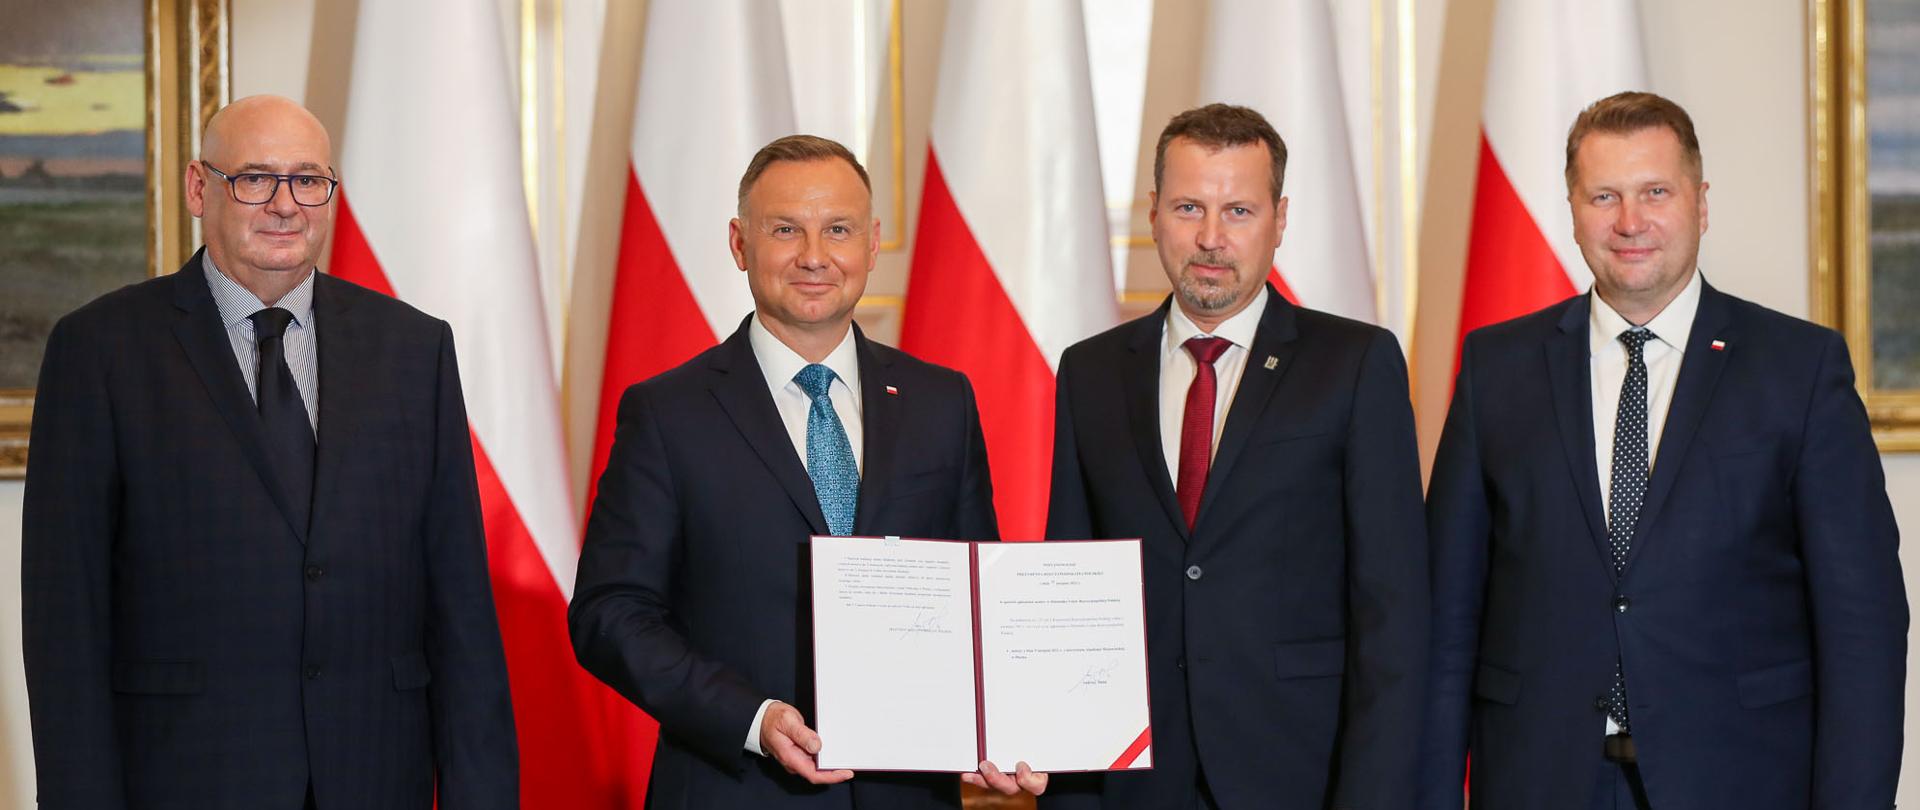 Prezydent RP podpisał ustawę o utworzeniu Akademii Mazowieckiej w Płocku